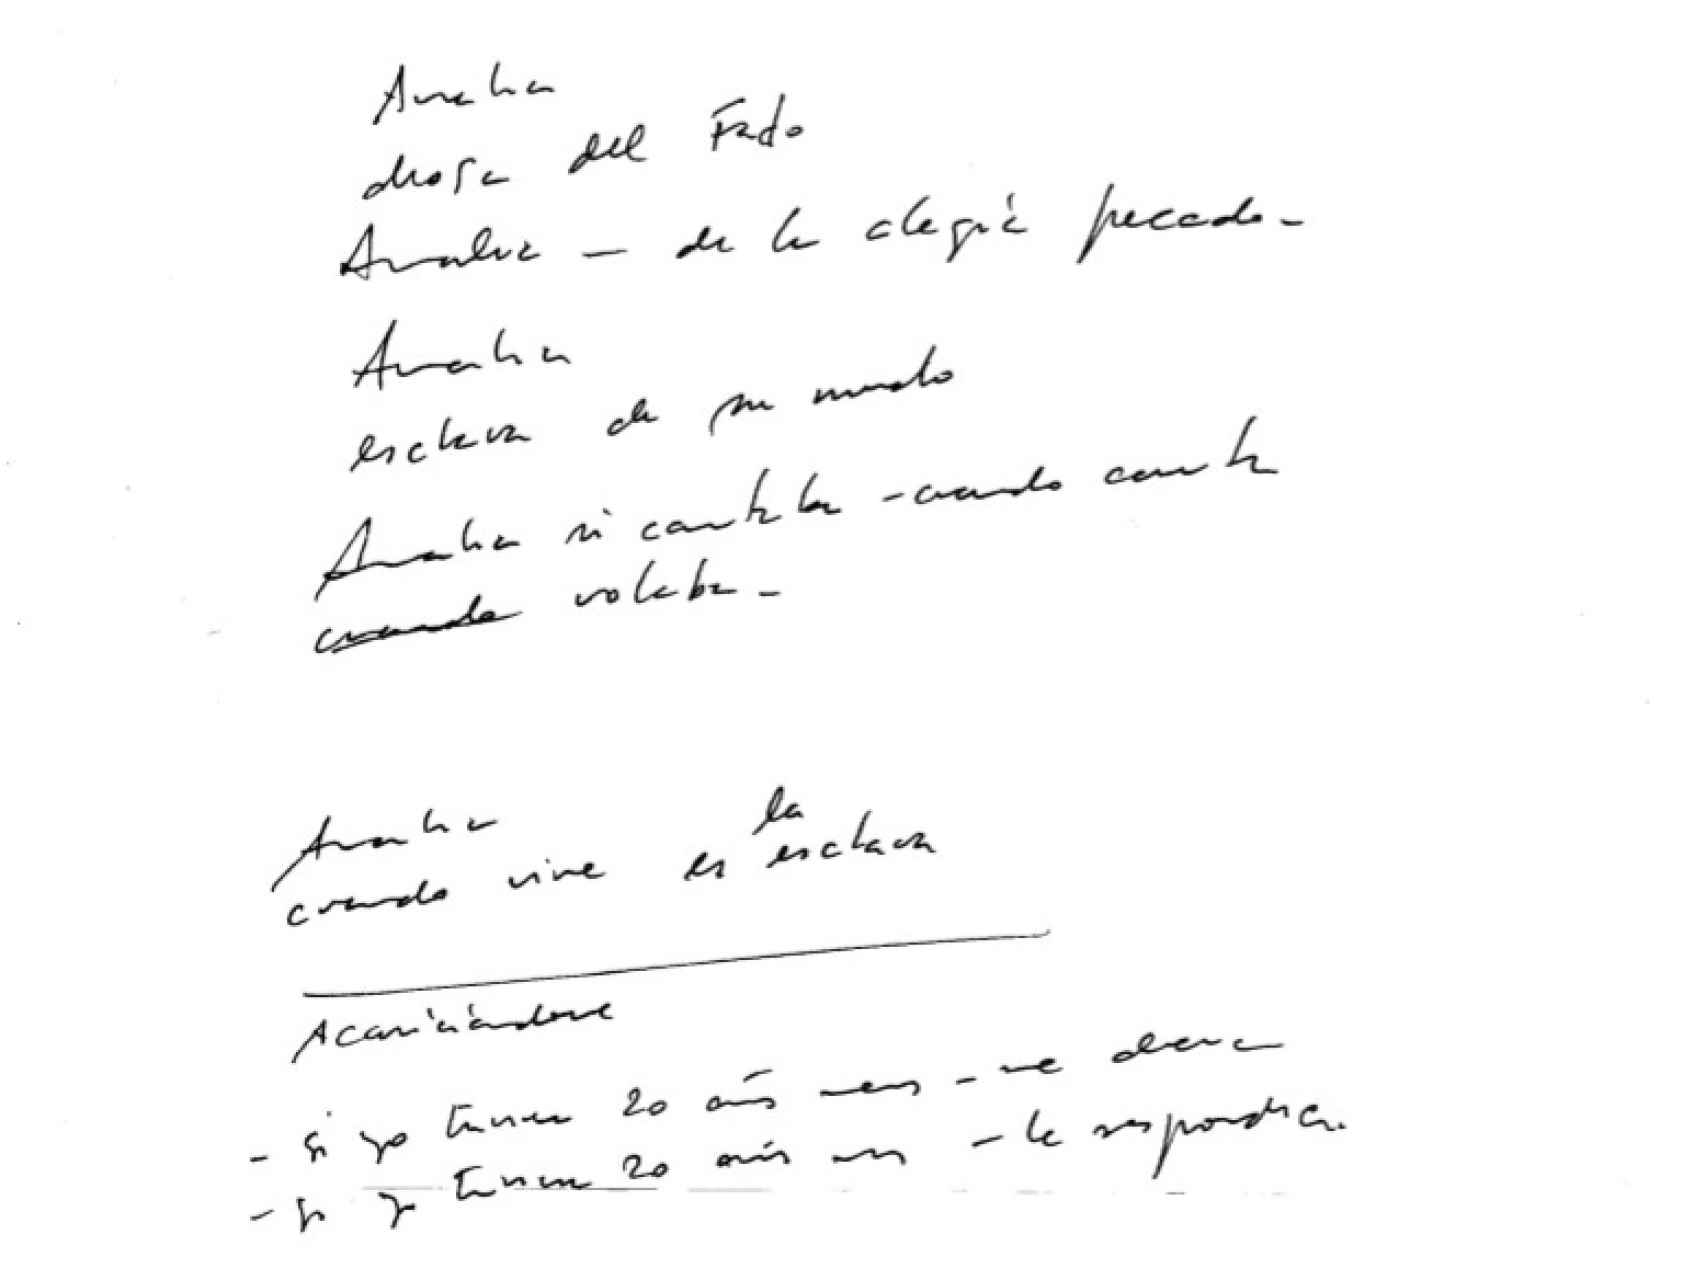 Carta manuscrita de Carlos Cano a Amália Rodrigues